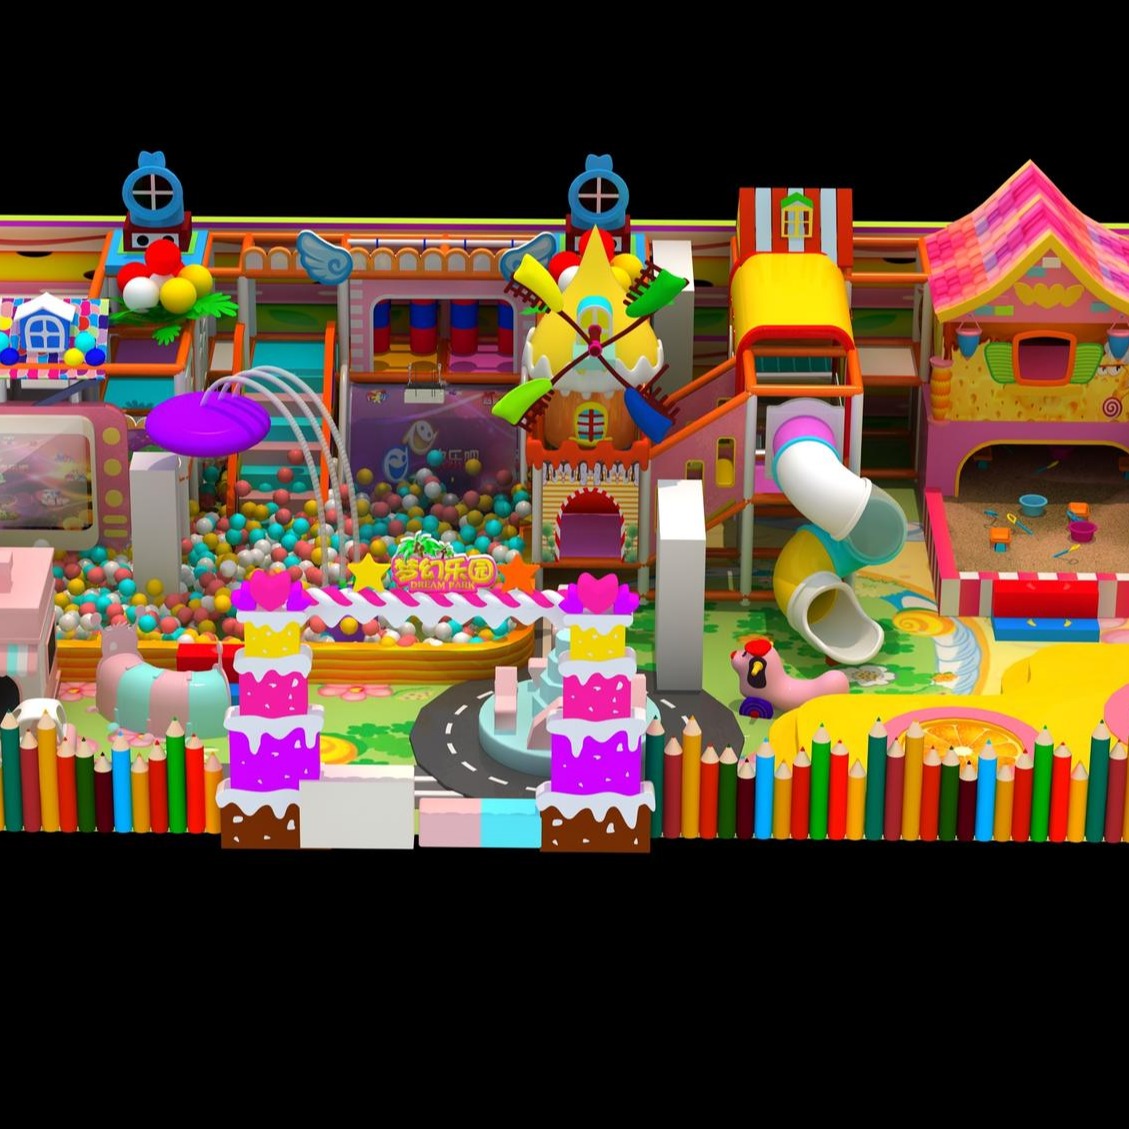 粉色系列淘气堡  淘气堡蹦床厂家  儿童乐园设备  淘气堡厂家图片